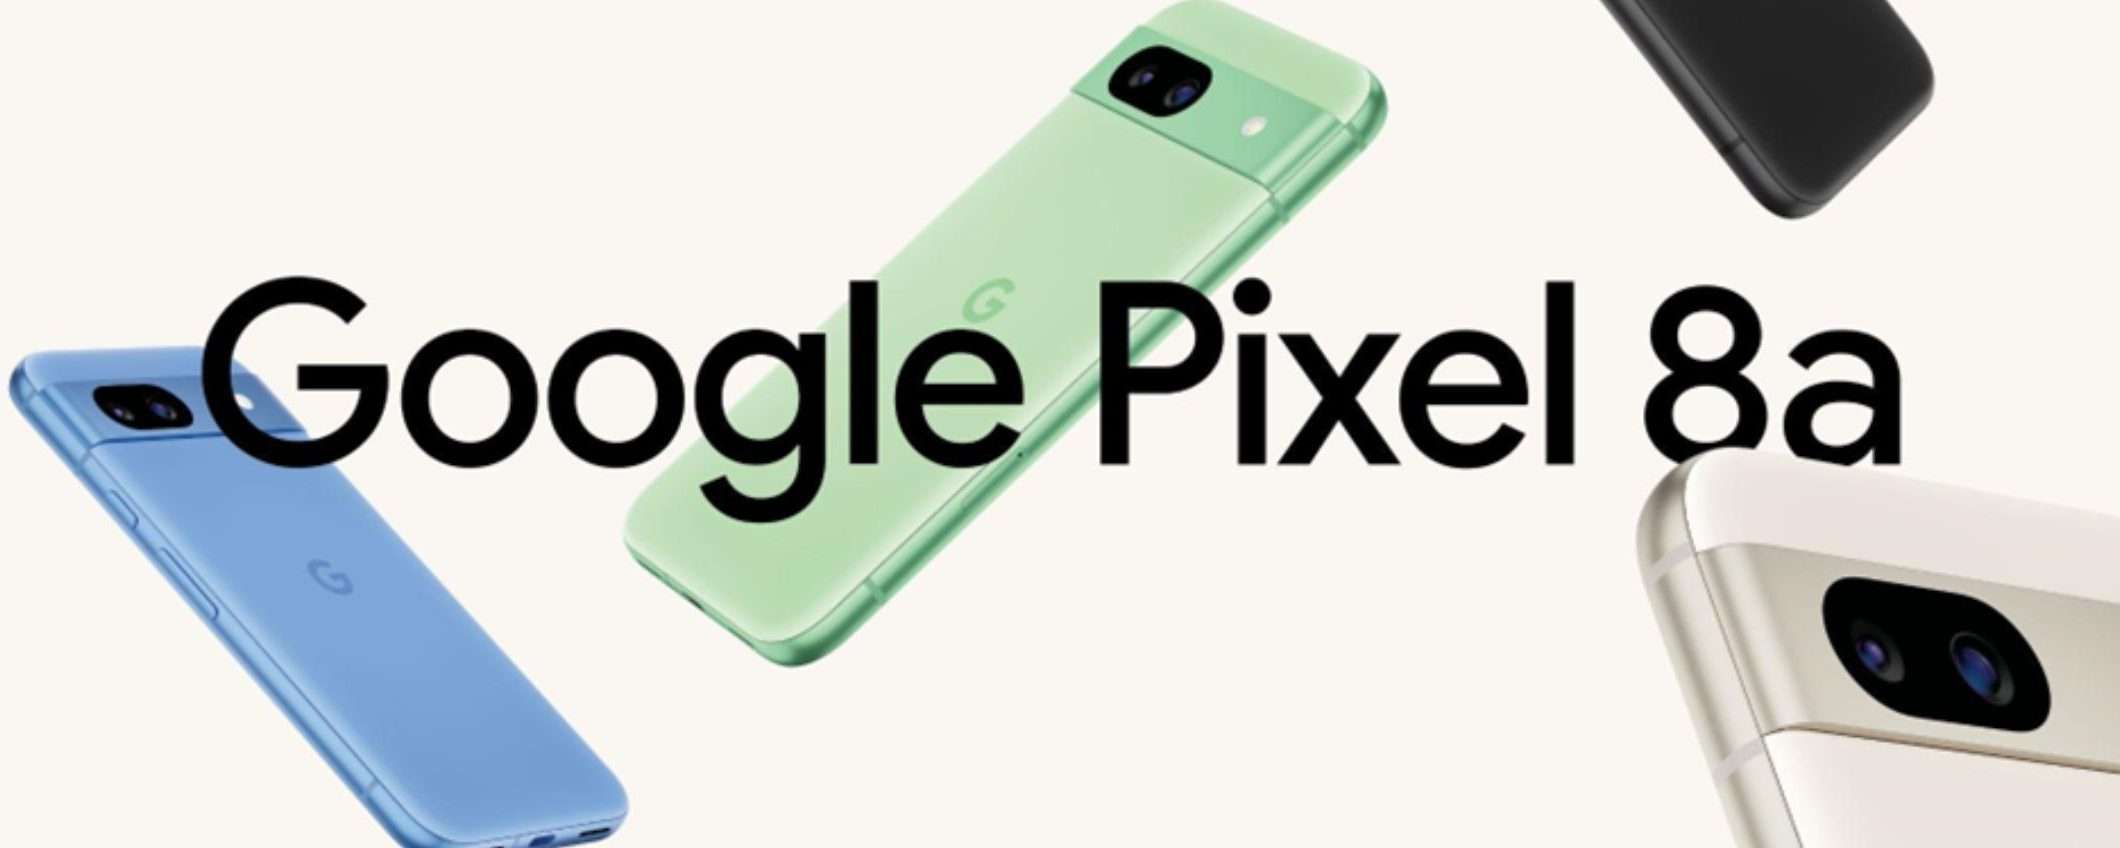 Google Pixel 8a è UFFICIALE: prezzo, disponibilità in Italia e caratteristiche